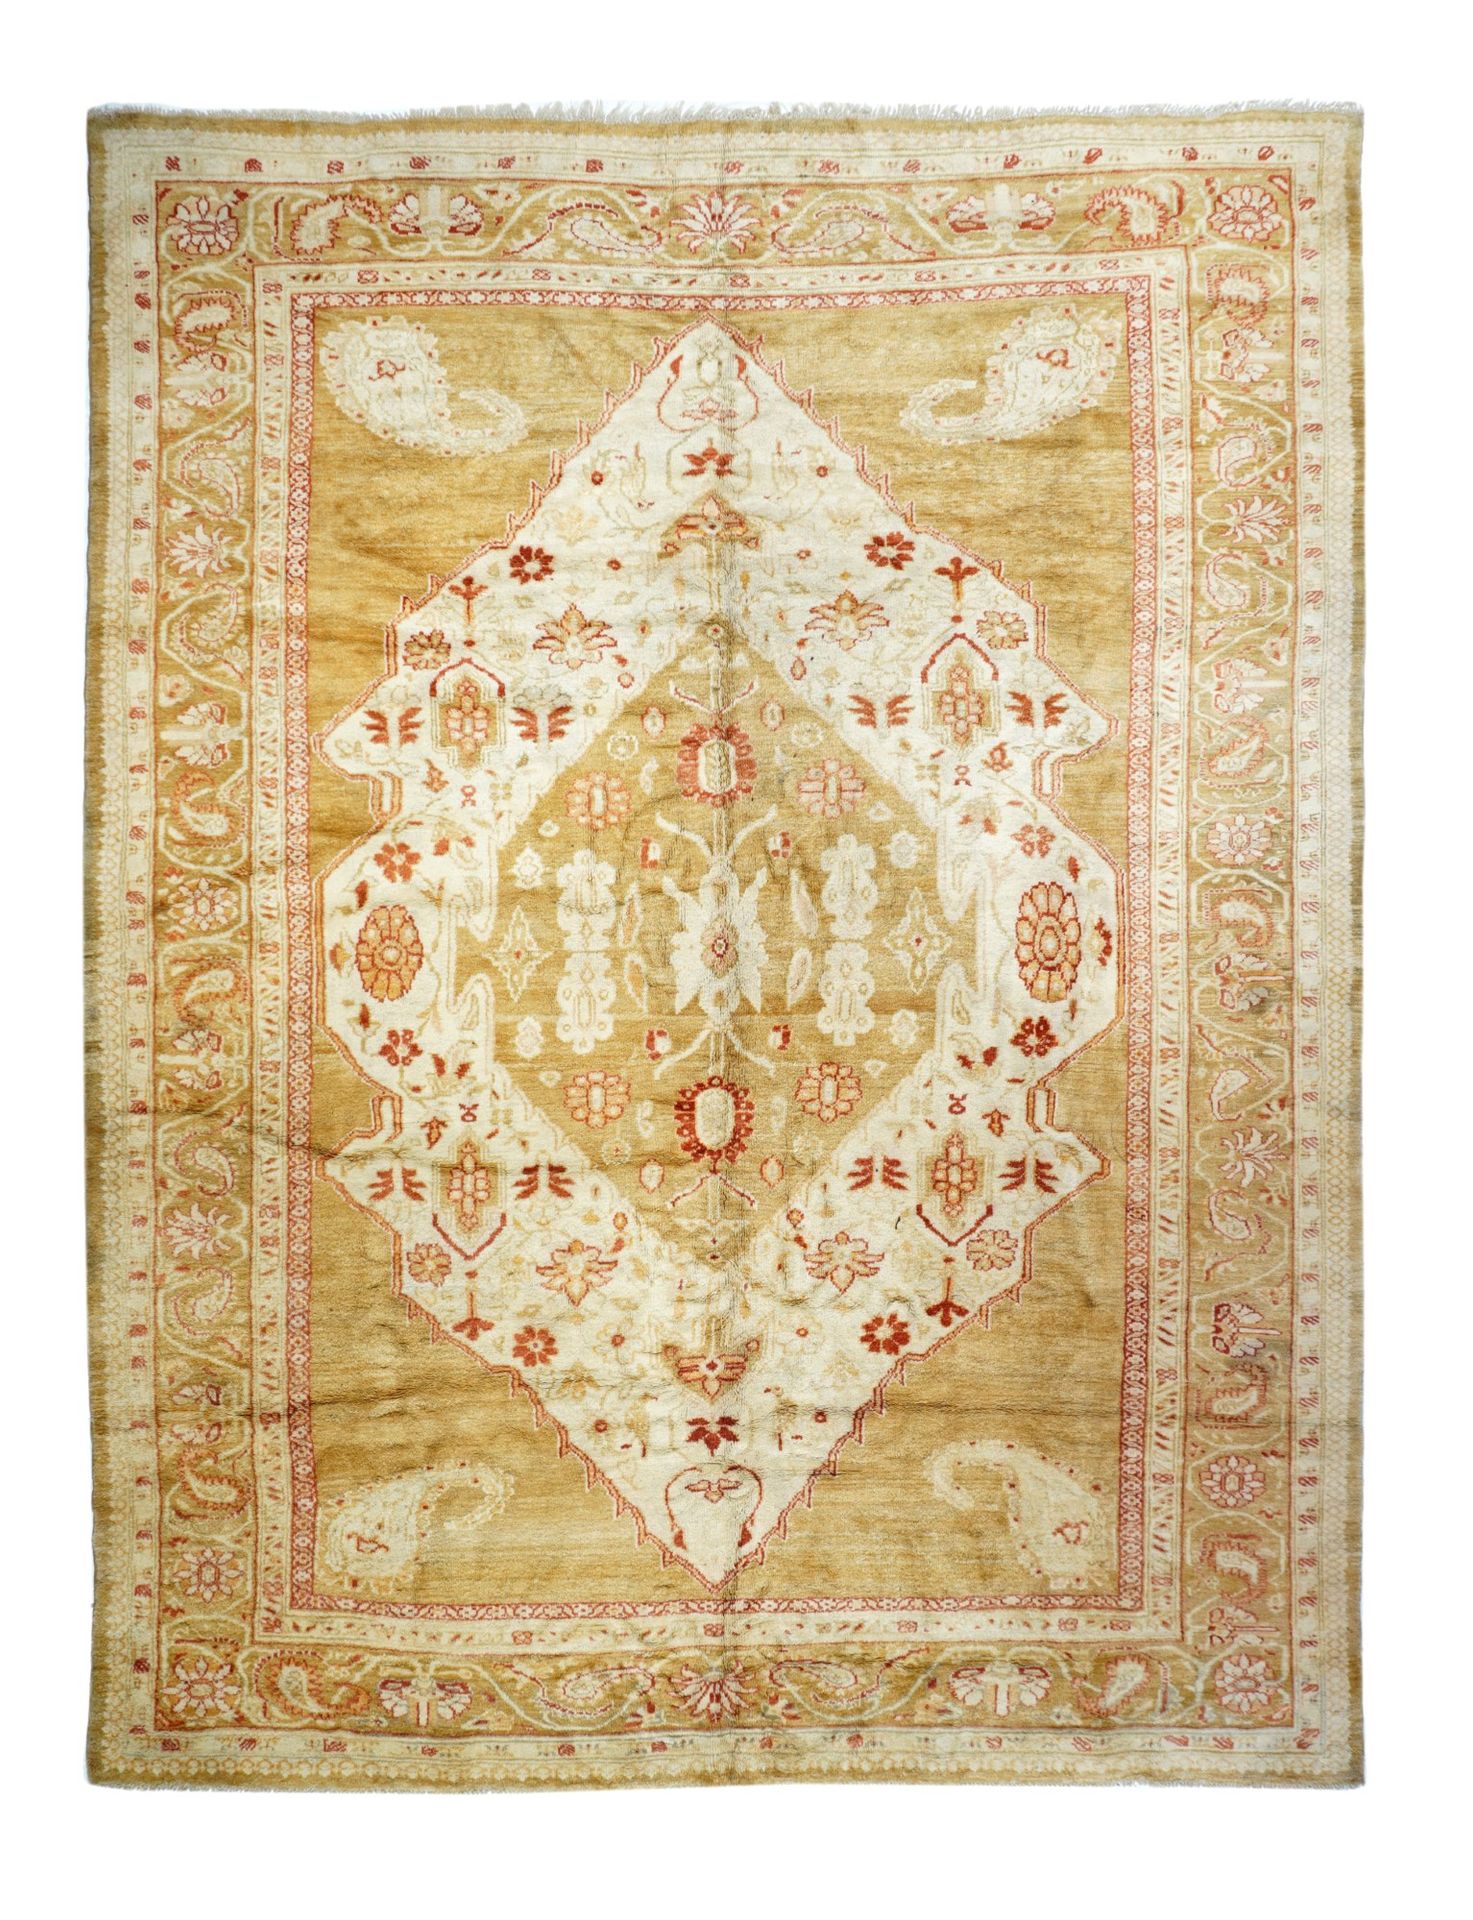 Null 古董土耳其乌沙克地毯，9'11'' x 13'5'' ( 3.02 x 4.09 M )